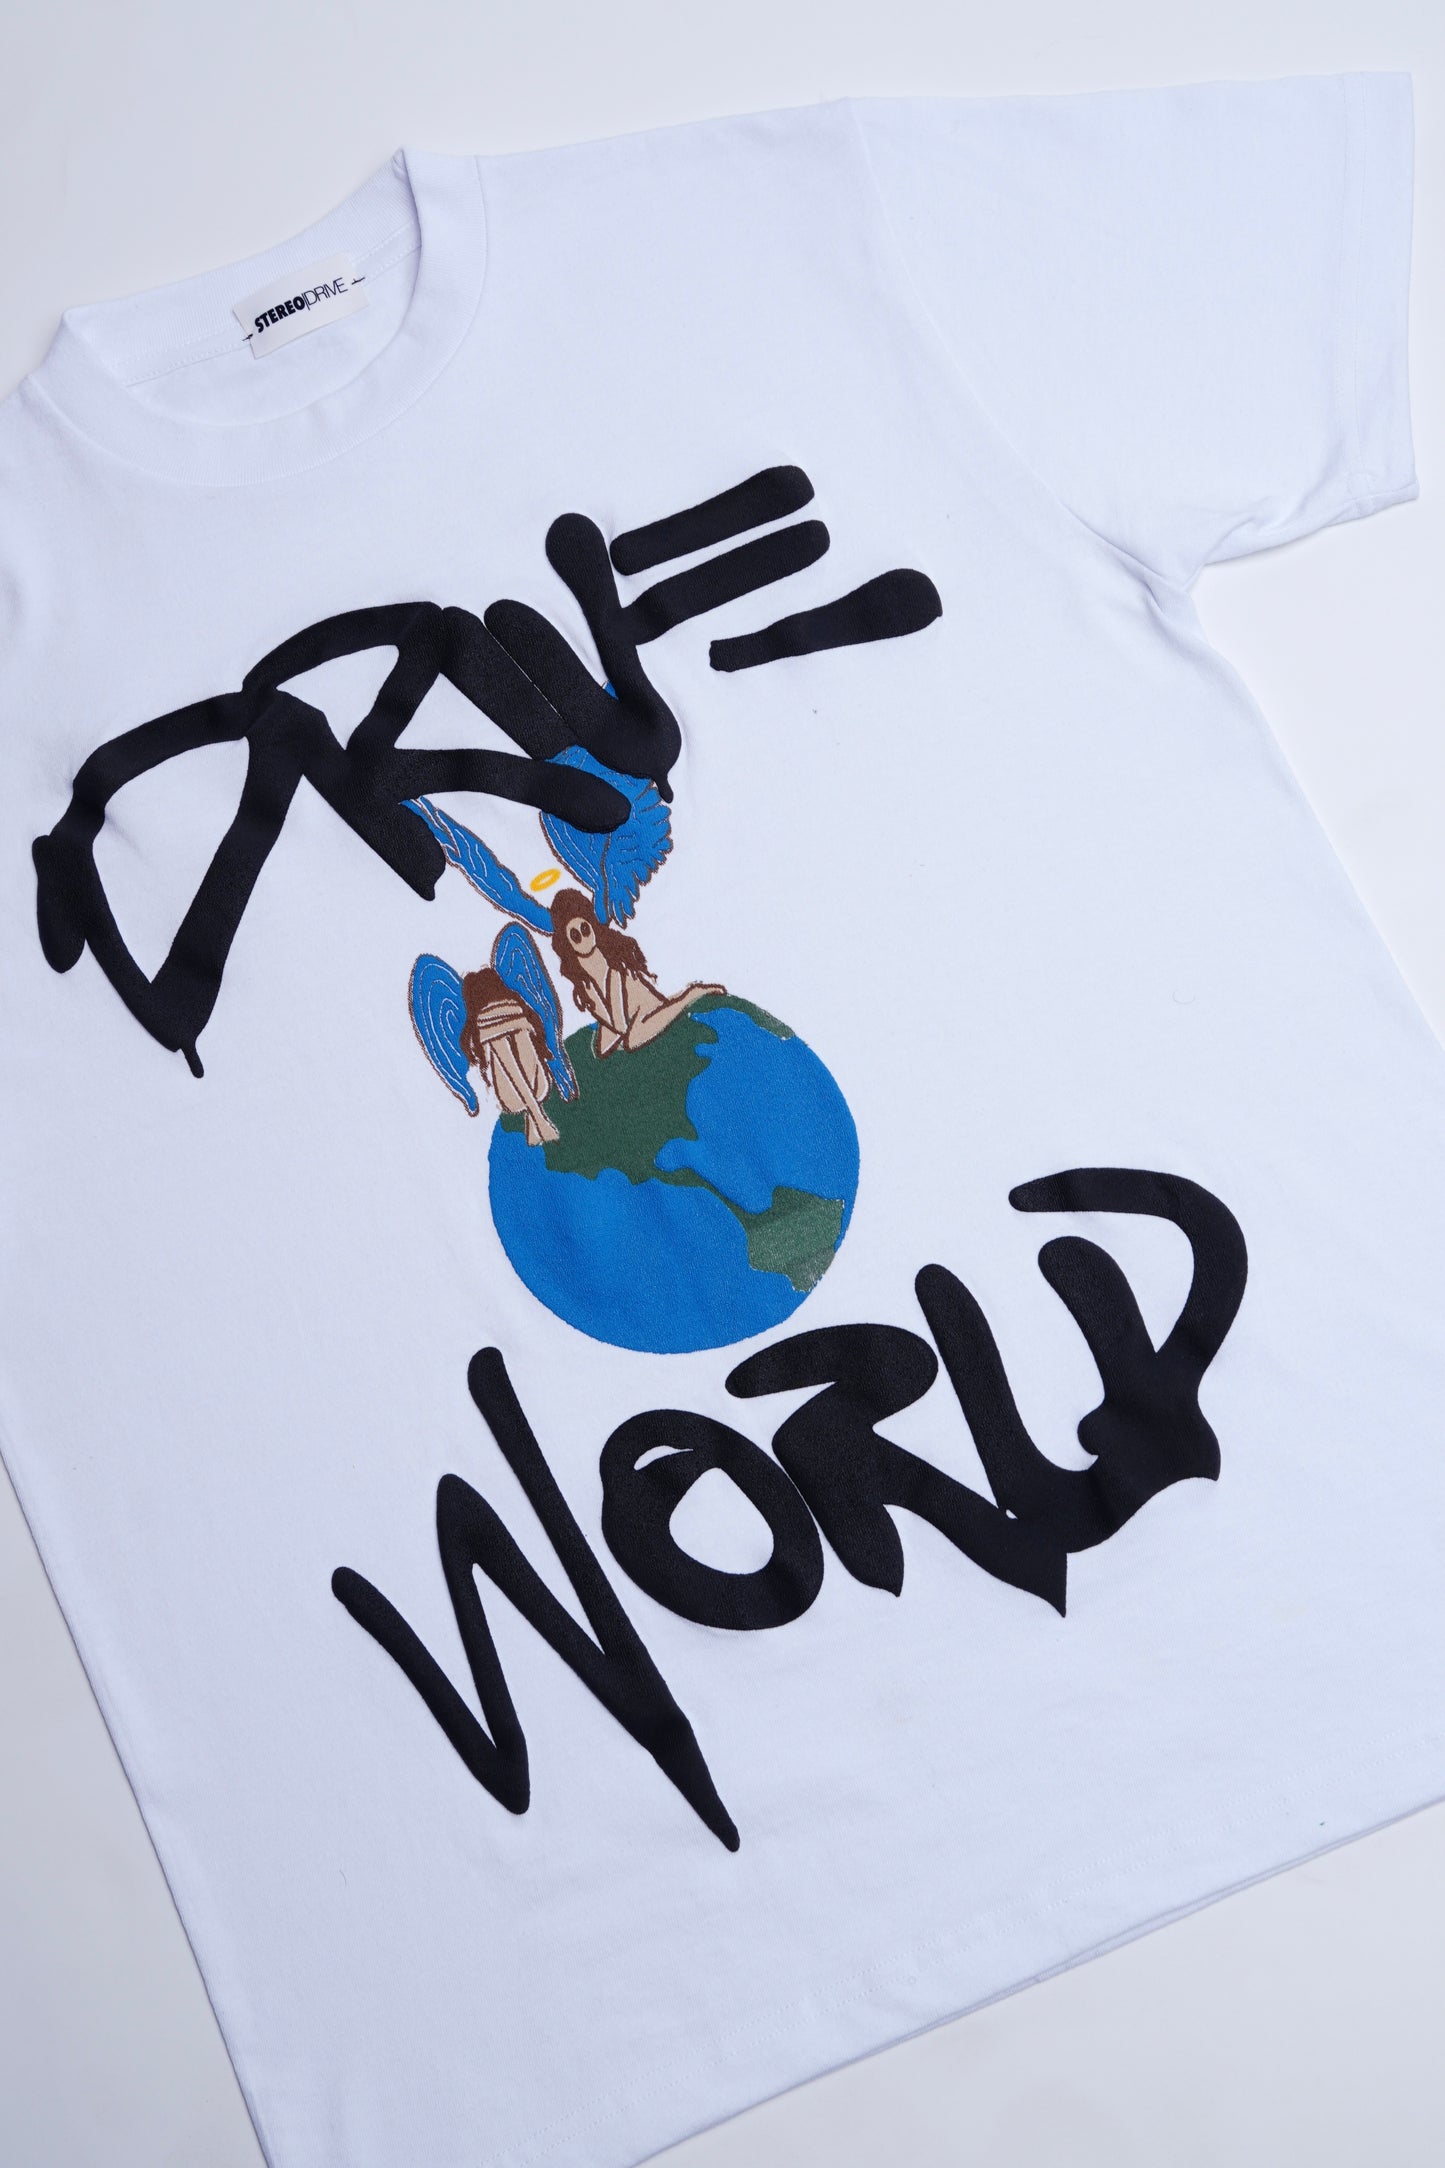 “Drive World” T-Shirt